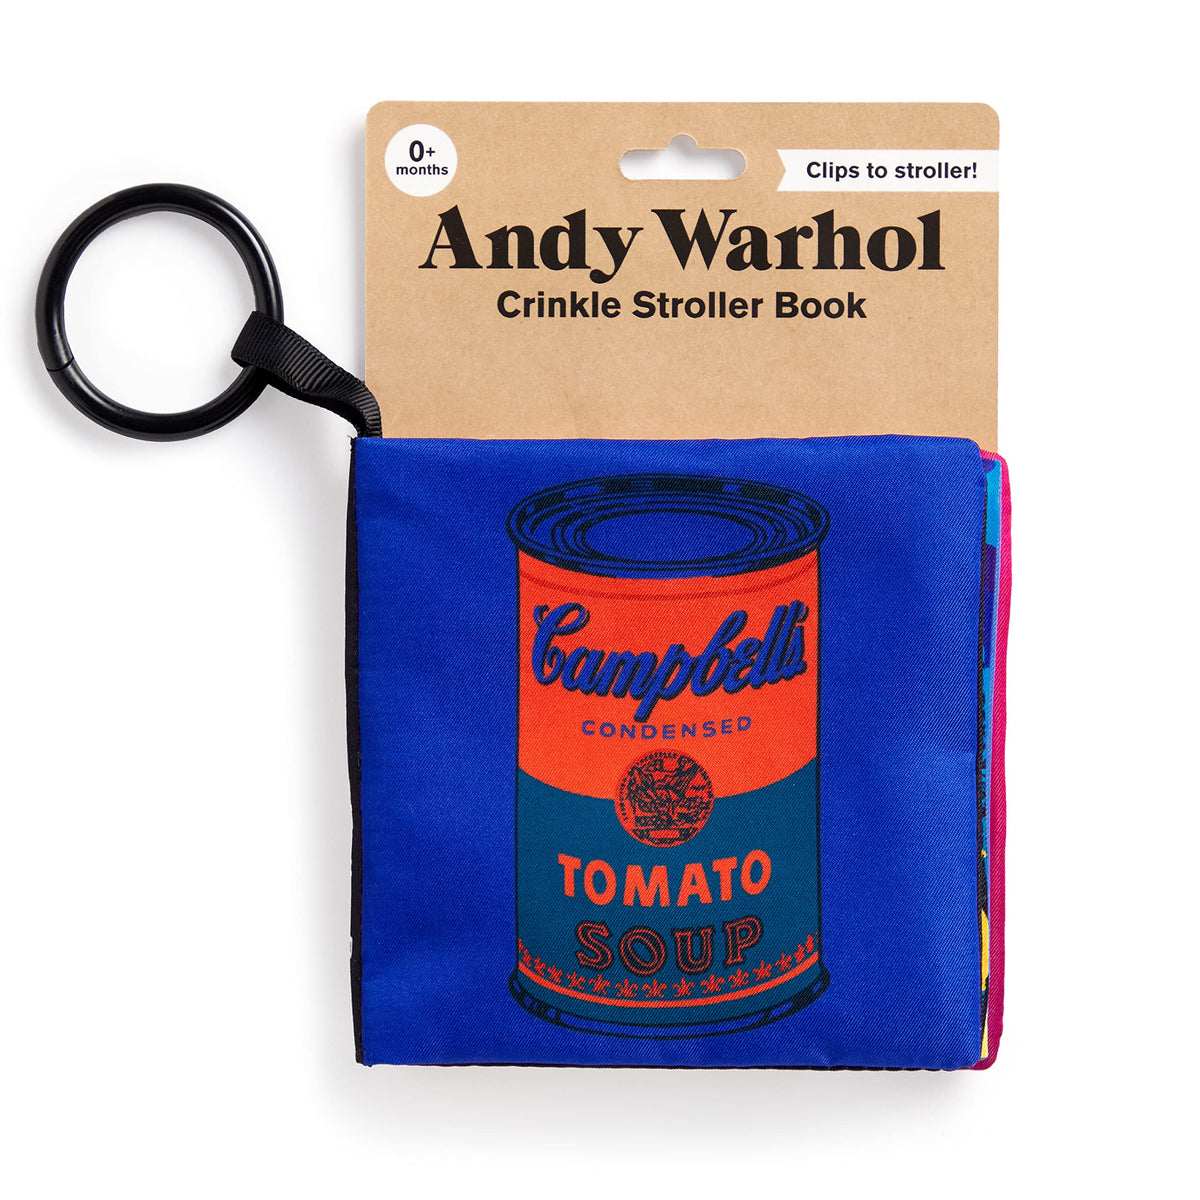 Crinkle Stroller Book - Andy Warhol